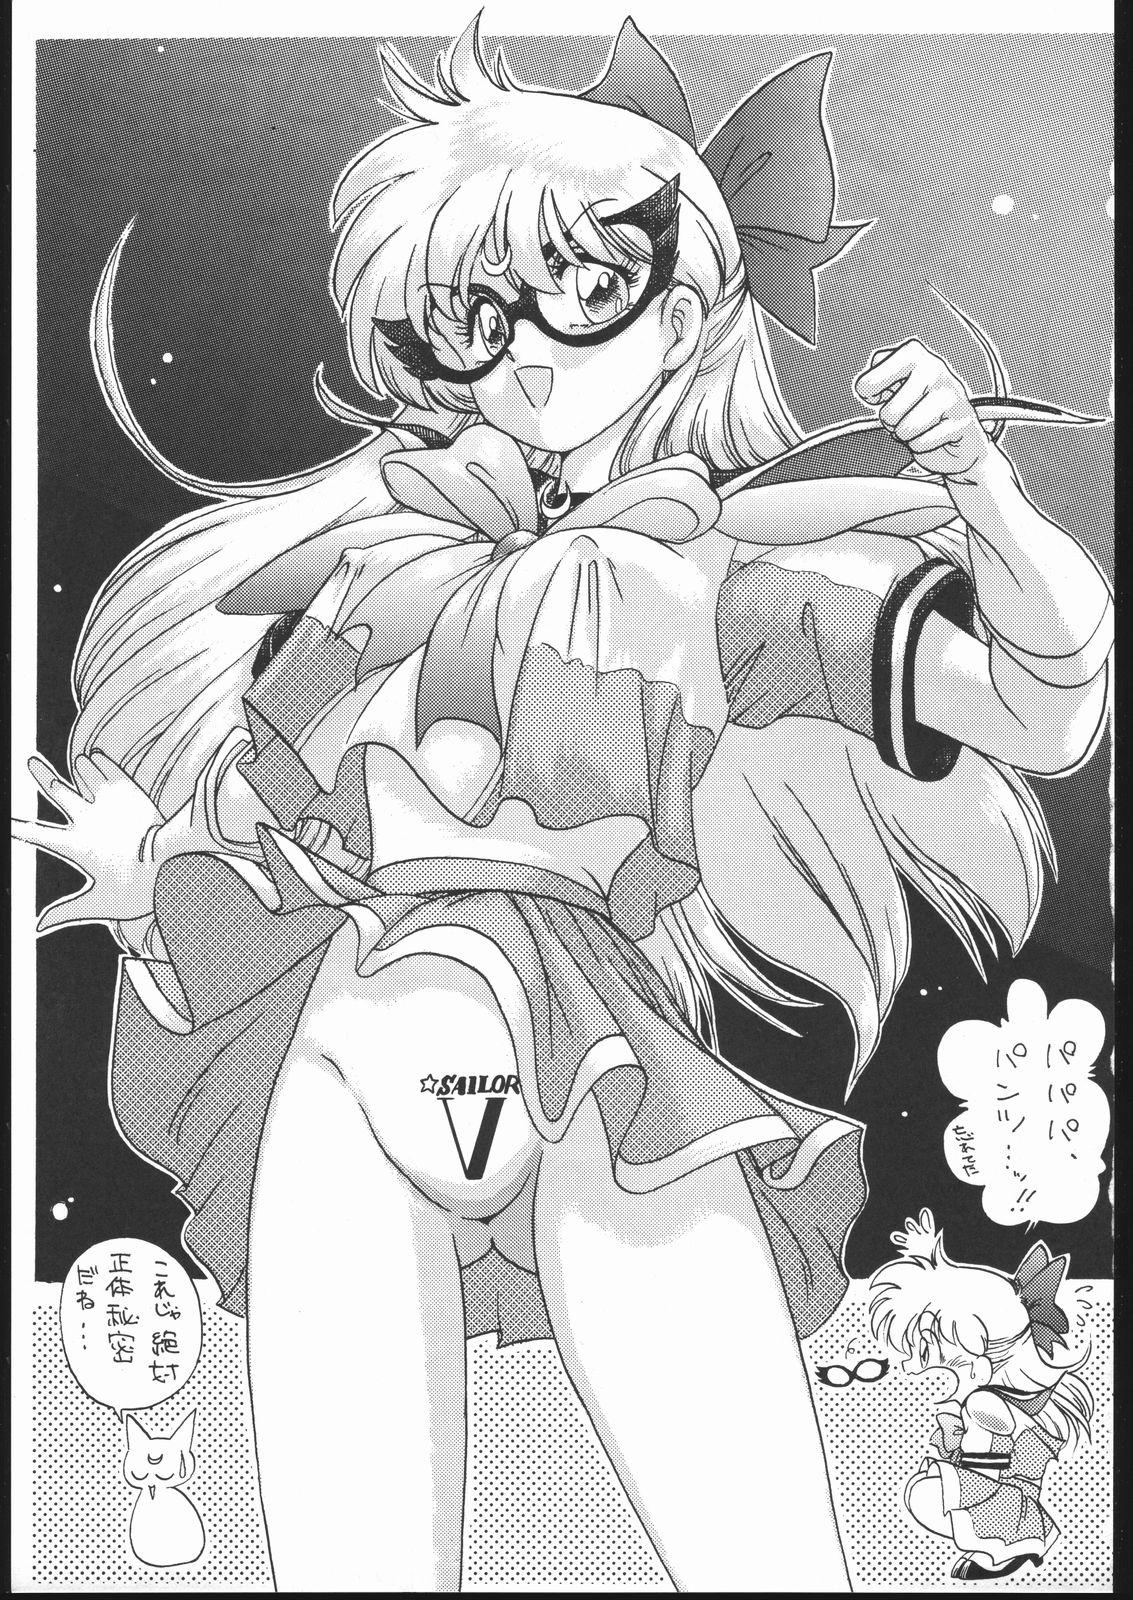 Ducha Gekkou Endymion 2 - Sailor moon 18yo - Page 2